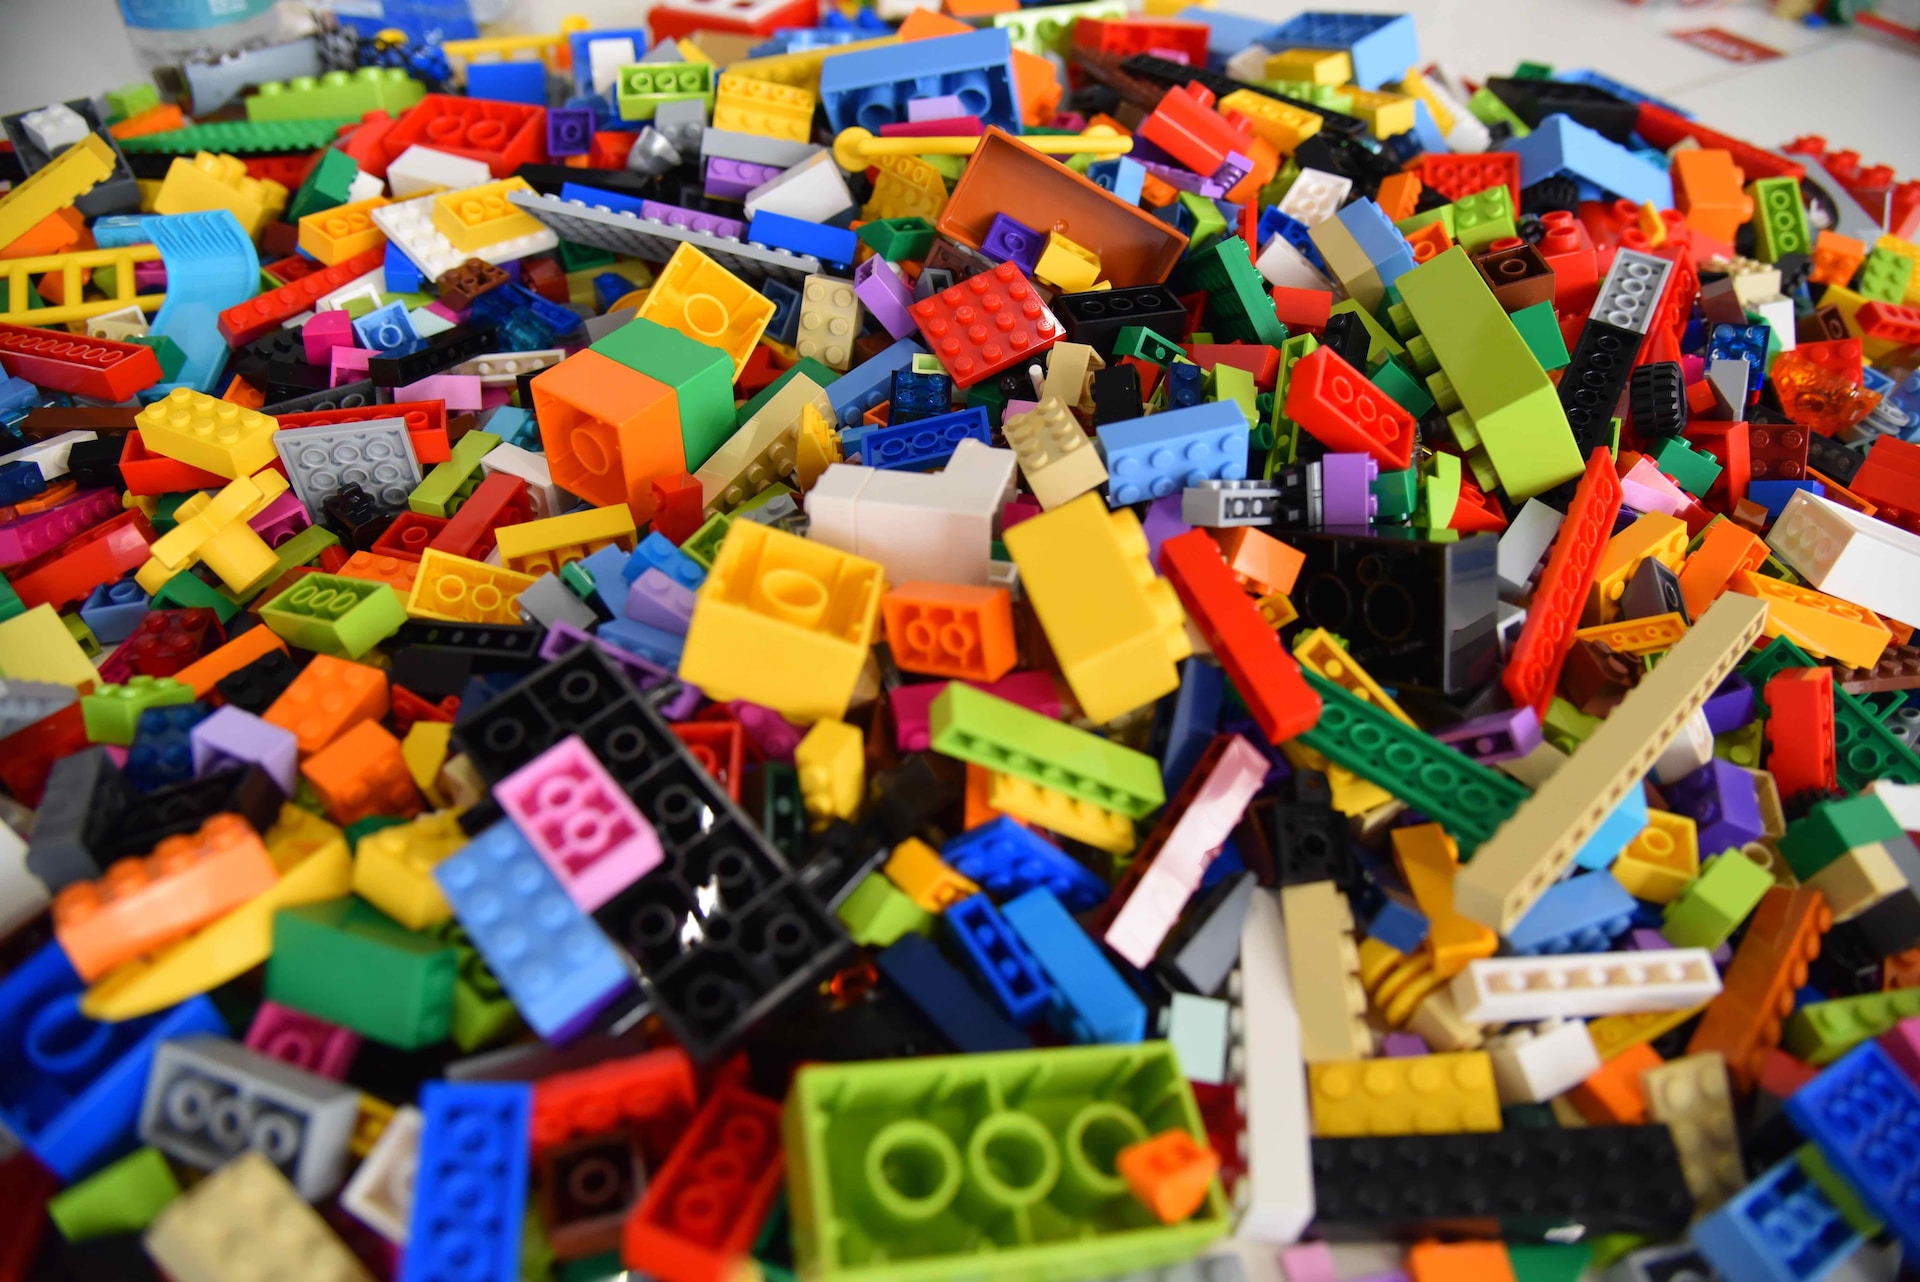 Lego nu renunță la plastic, deși a promis că va folosi un material mai sustenabil